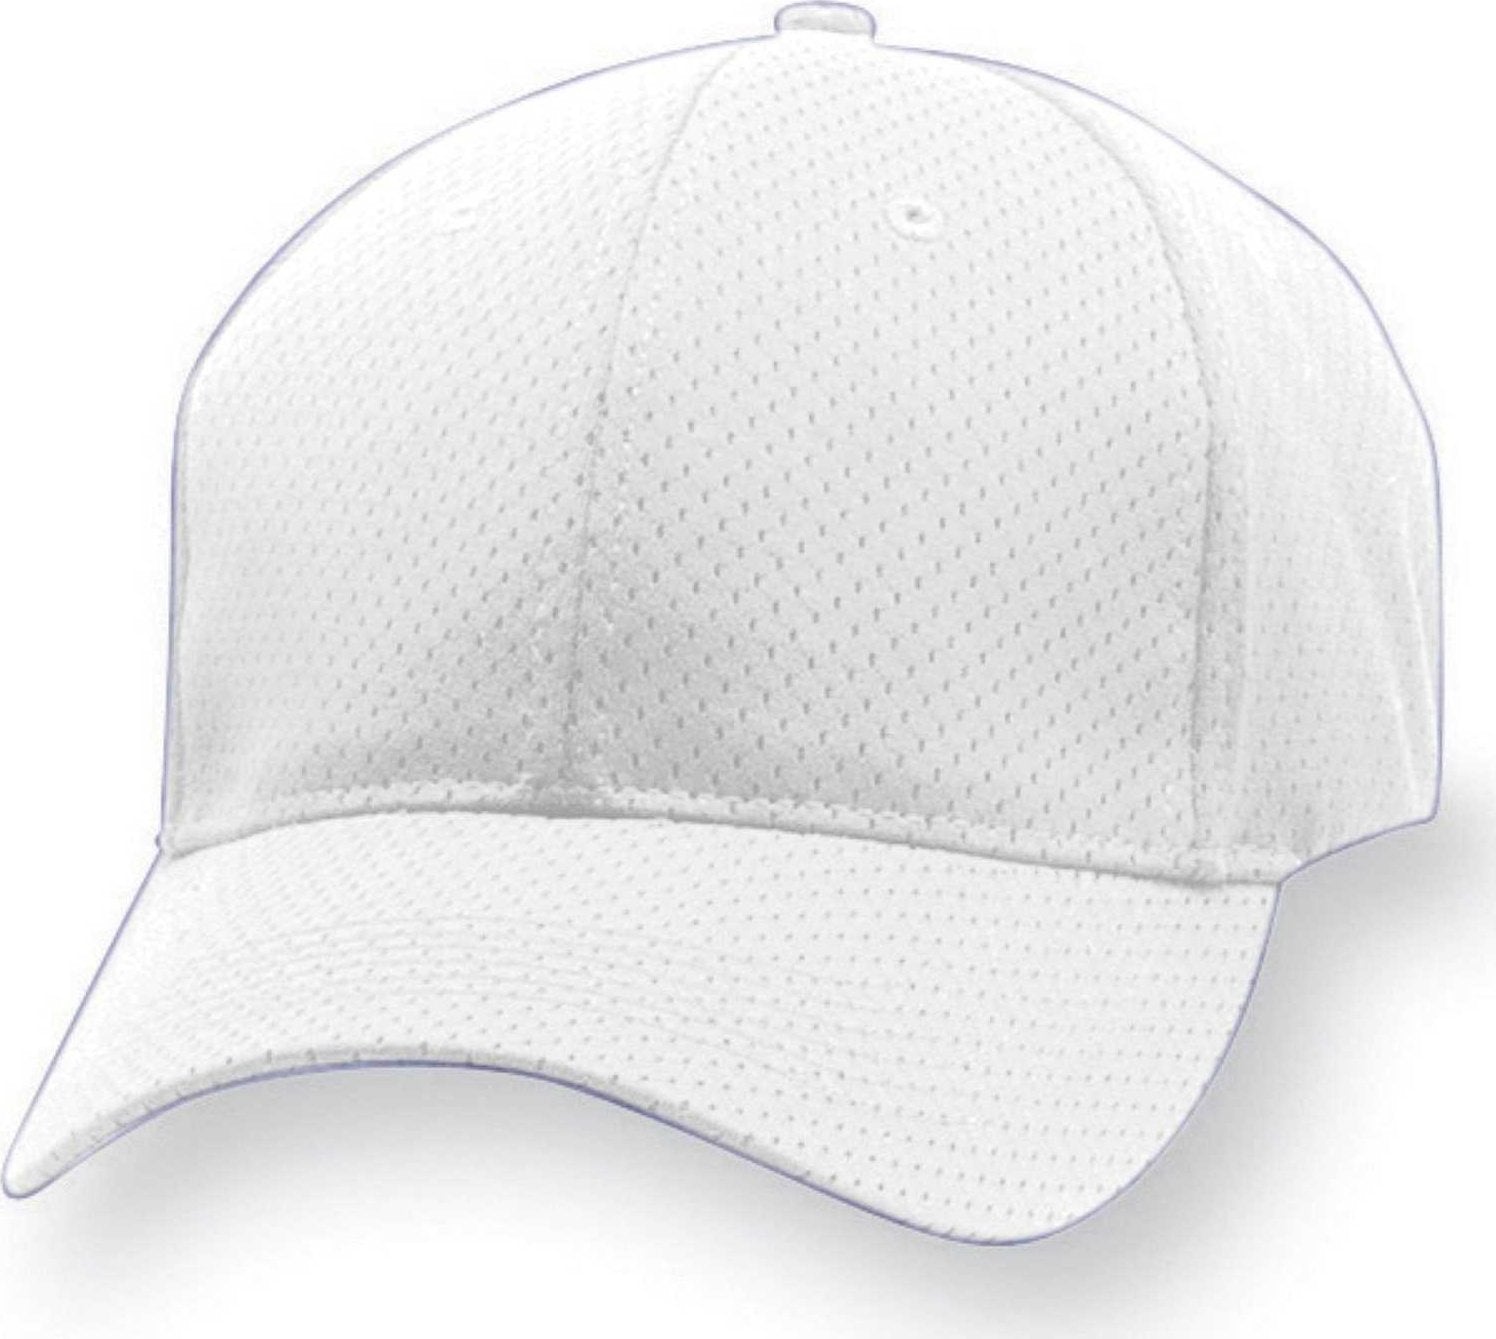 Augusta 6232 Sport Flex Athletic Mesh Cap - White - HIT a Double